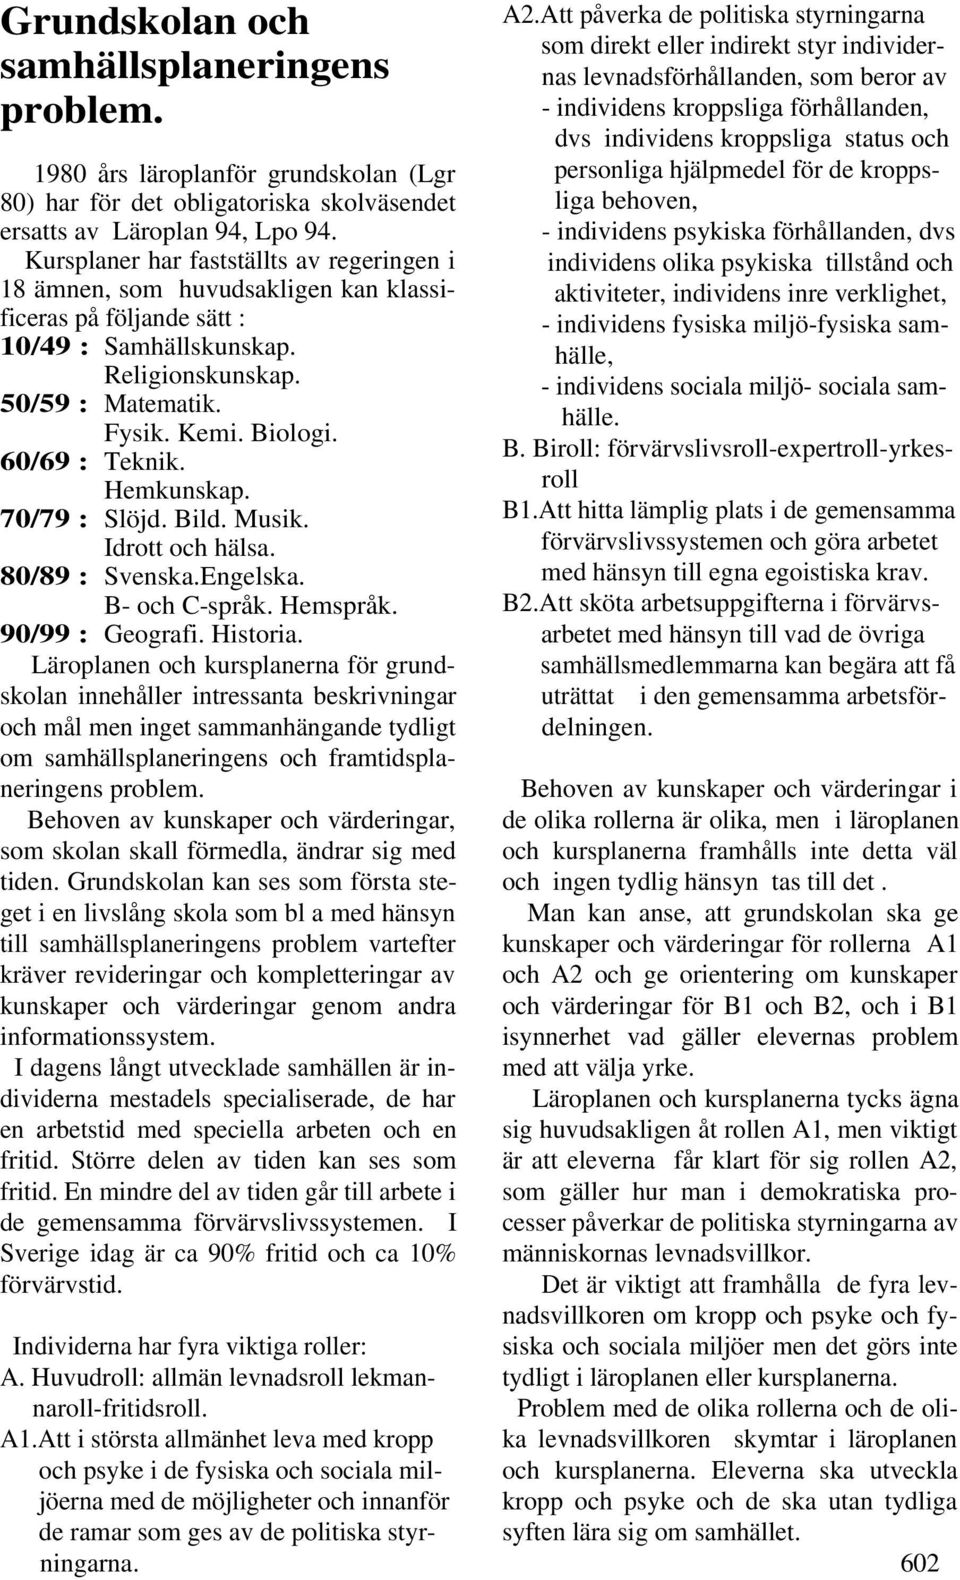 60/69 : Teknik. Hemkunskap. 70/79 : Slöjd. Bild. Musik. Idrott och hälsa. 80/89 : Svenska.Engelska. B- och C-språk. Hemspråk. 90/99 : Geografi. Historia.